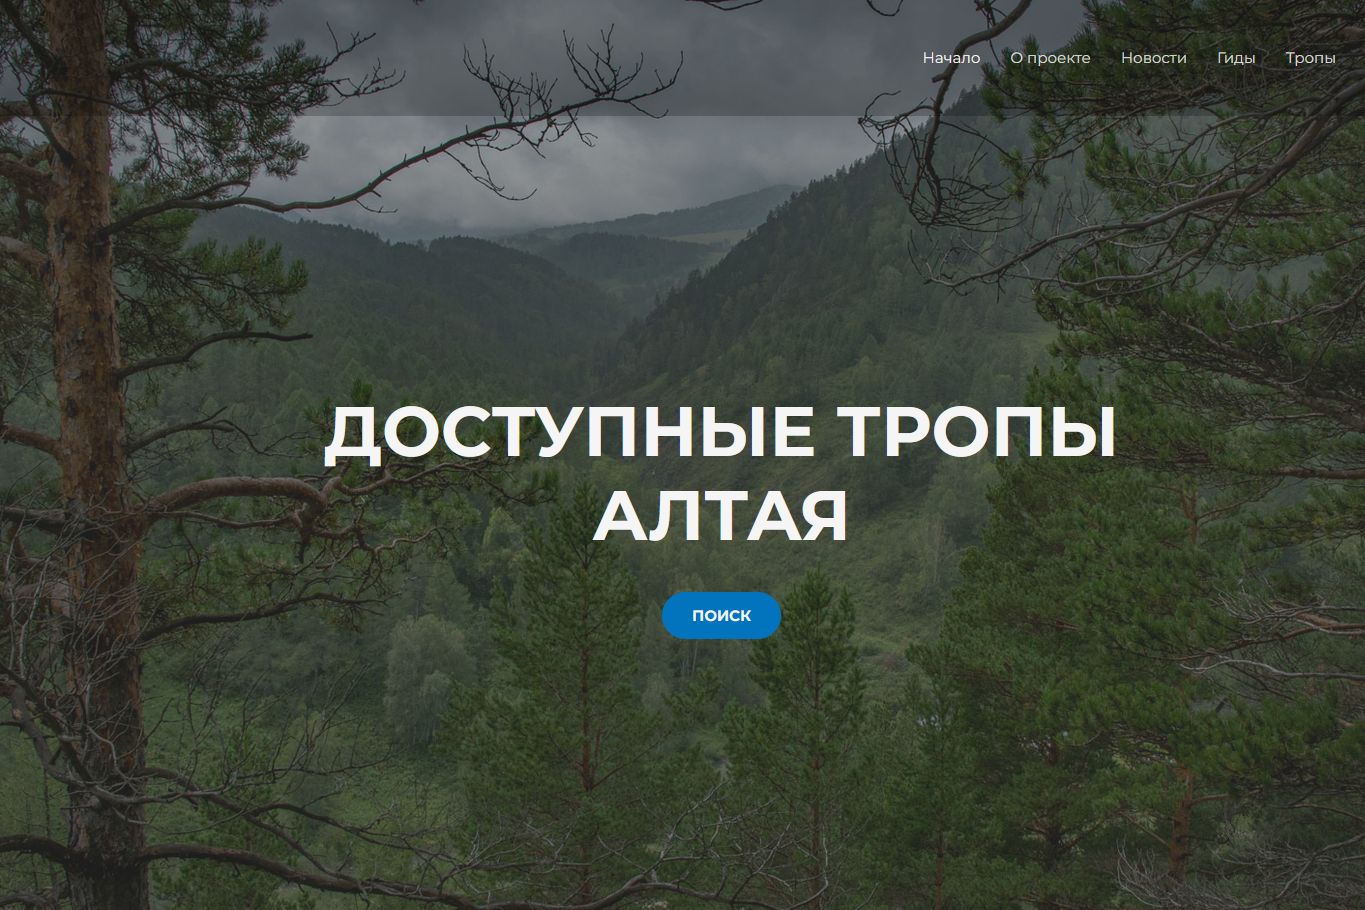 интерфейс сайта Доступные тропы Алтя_altai-ecotrails.ru.jpg